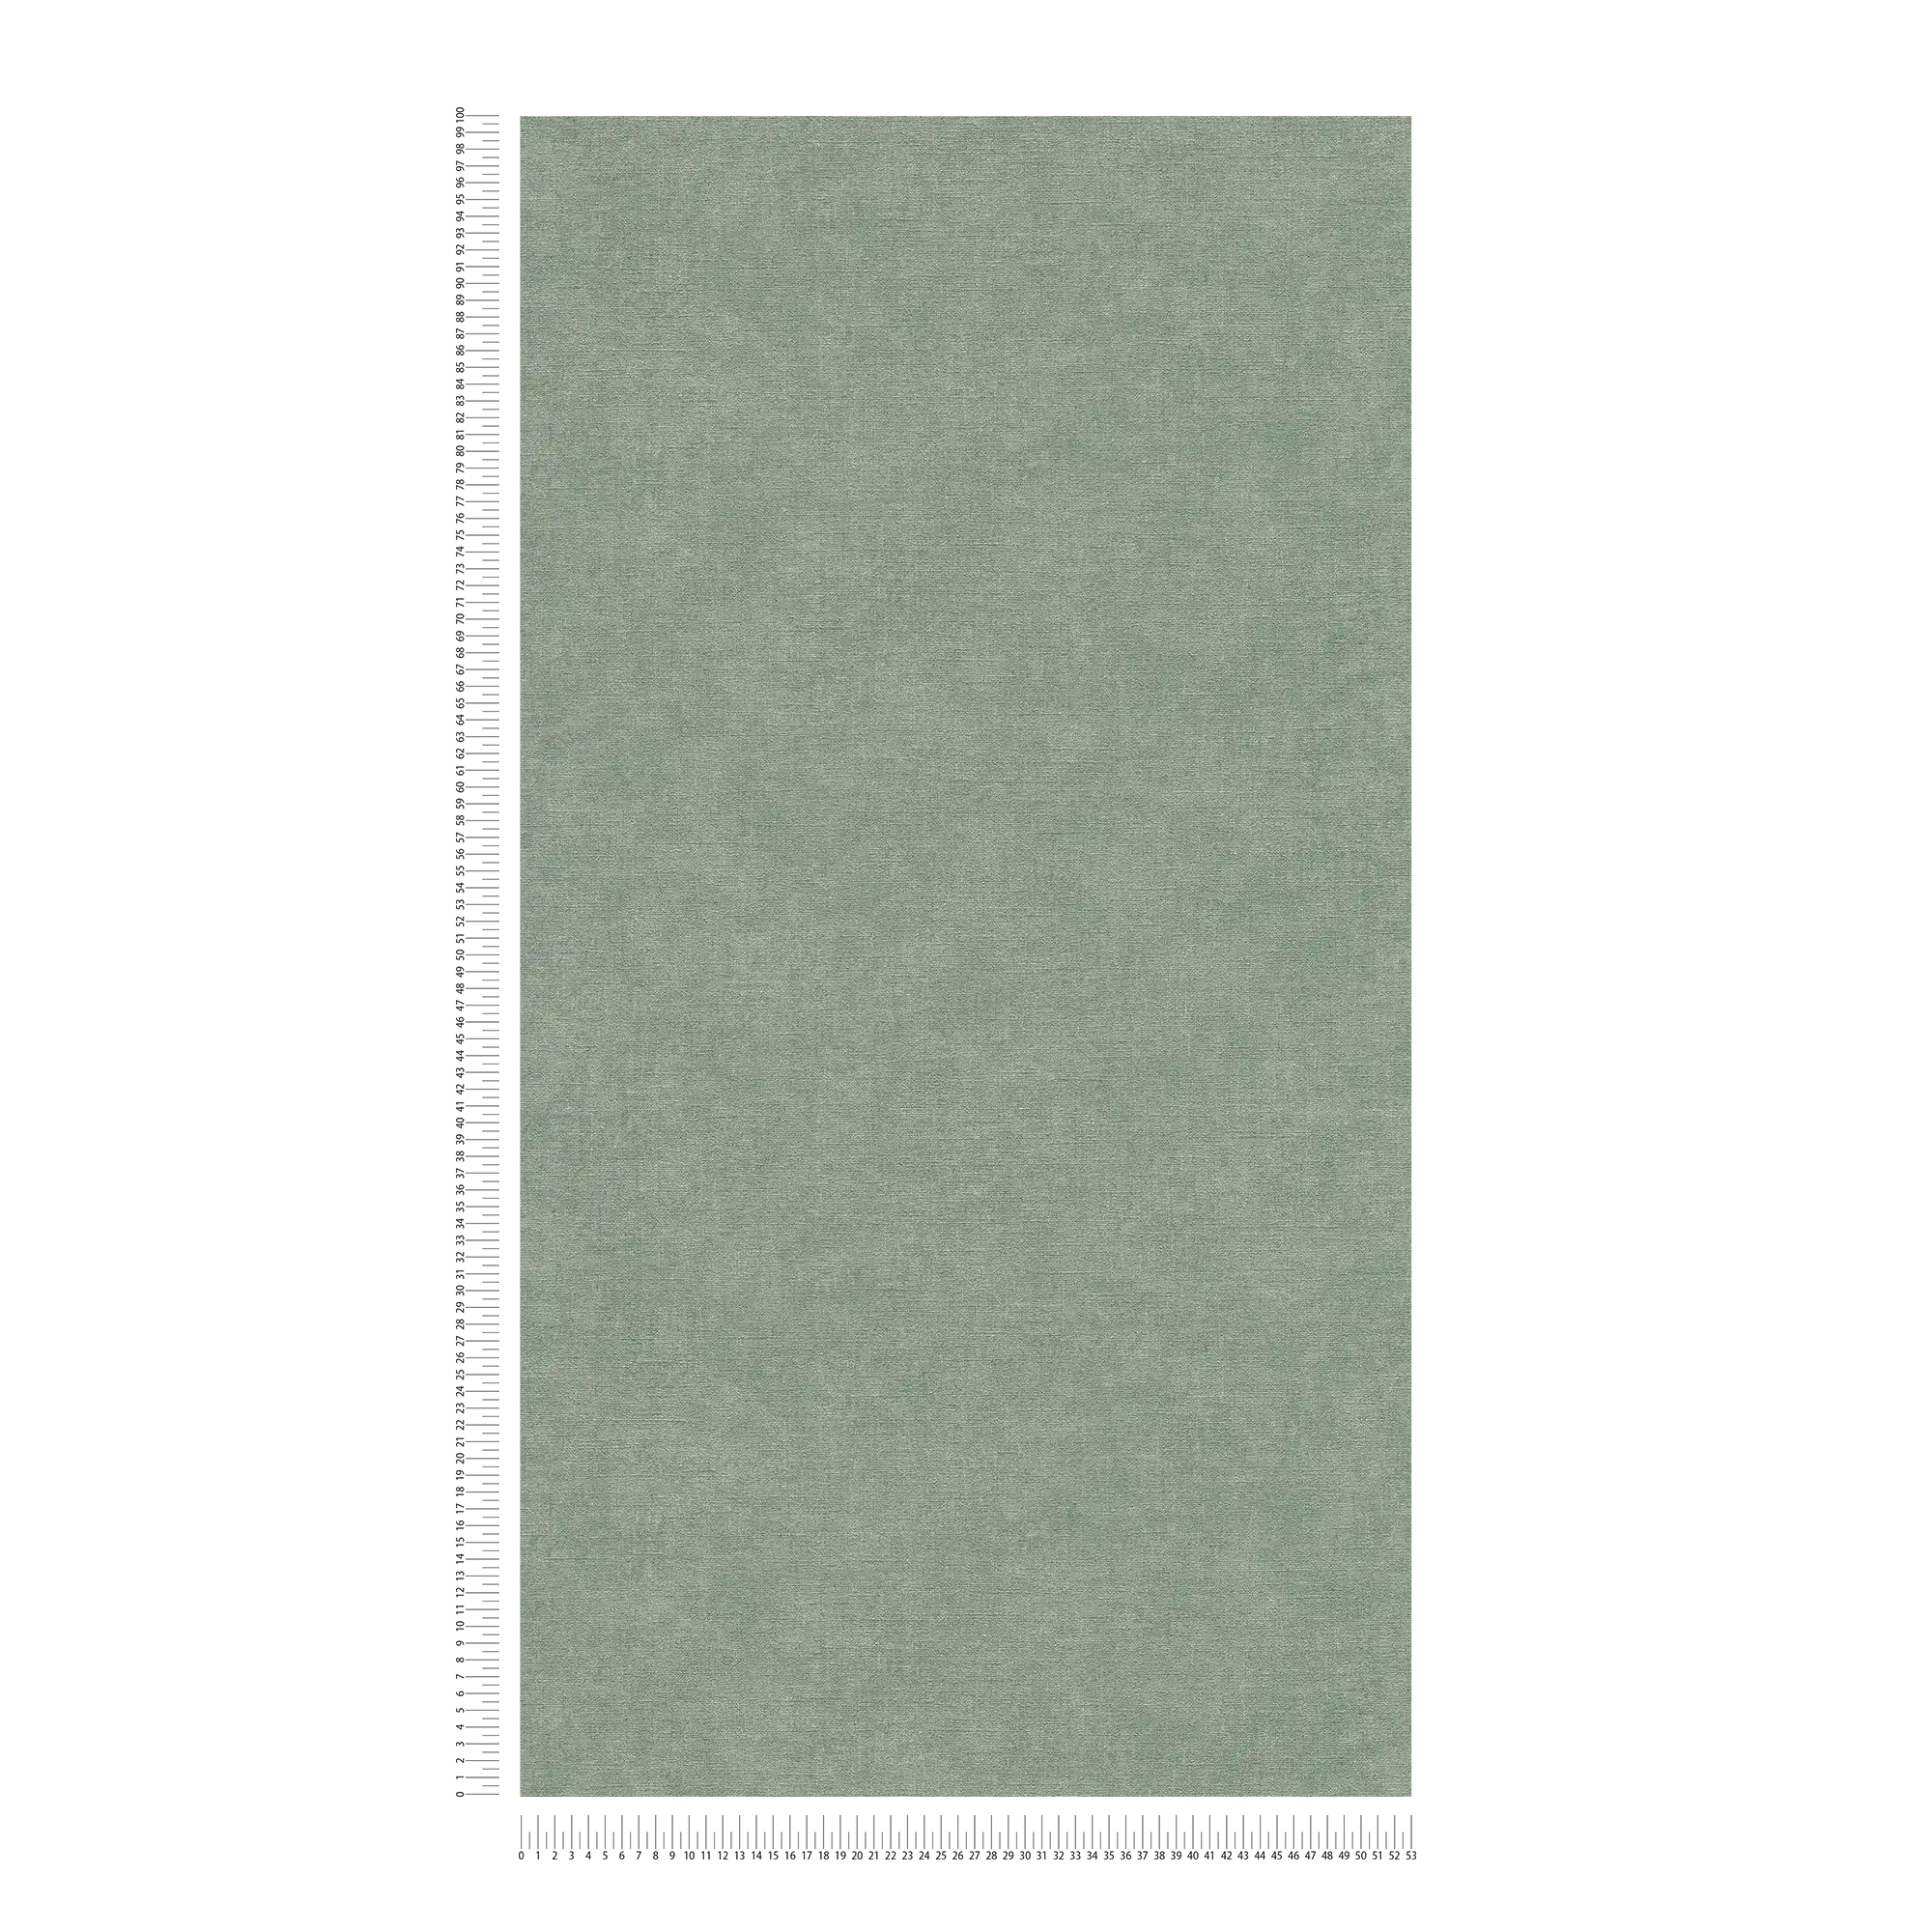             papier peint en papier uni légèrement structuré aspect textile - vert, gris
        